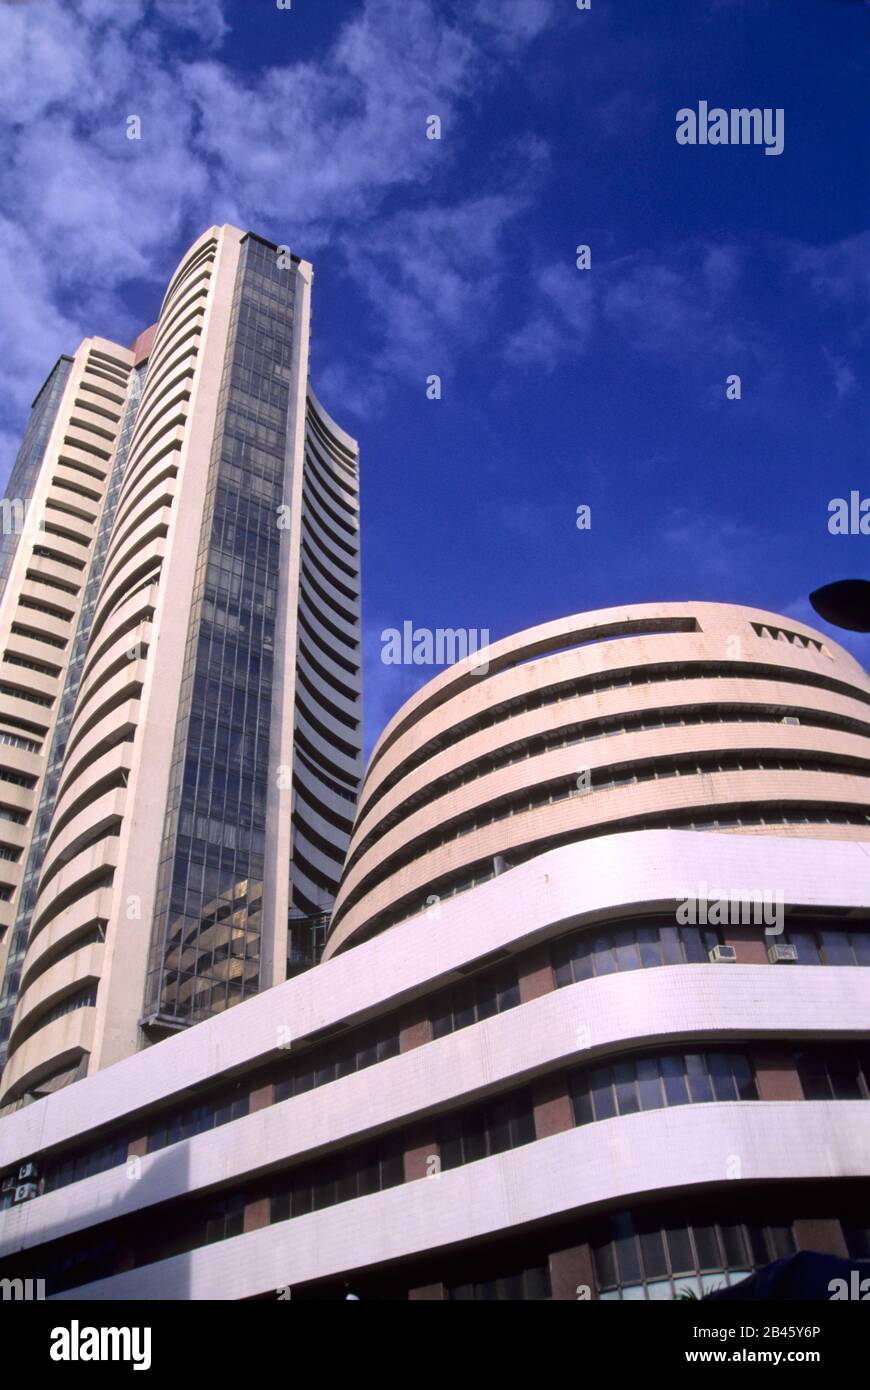 BSE Bombay Stock Exchange Indian stock exchange Dalal Street